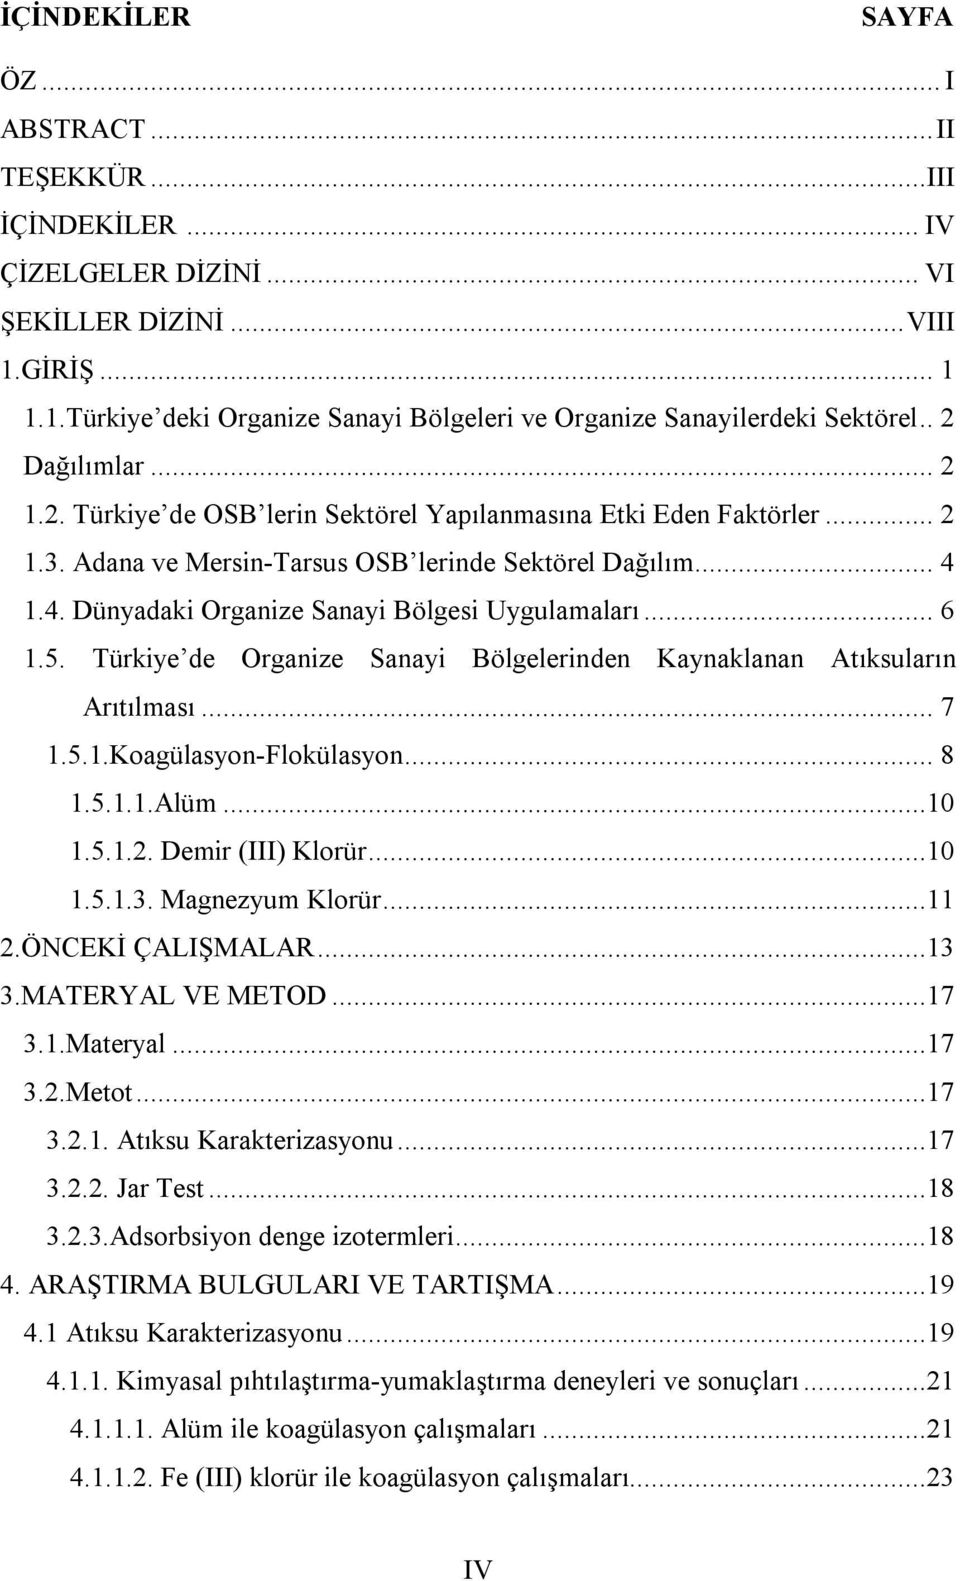 1.4. Dünyadaki Organize Sanayi Bölgesi Uygulamaları... 6 1.5. Türkiye de Organize Sanayi Bölgelerinden Kaynaklanan Atıksuların Arıtılması... 7 1.5.1.Koagülasyon-Flokülasyon... 8 1.5.1.1.Alüm...10 1.5.1.2.